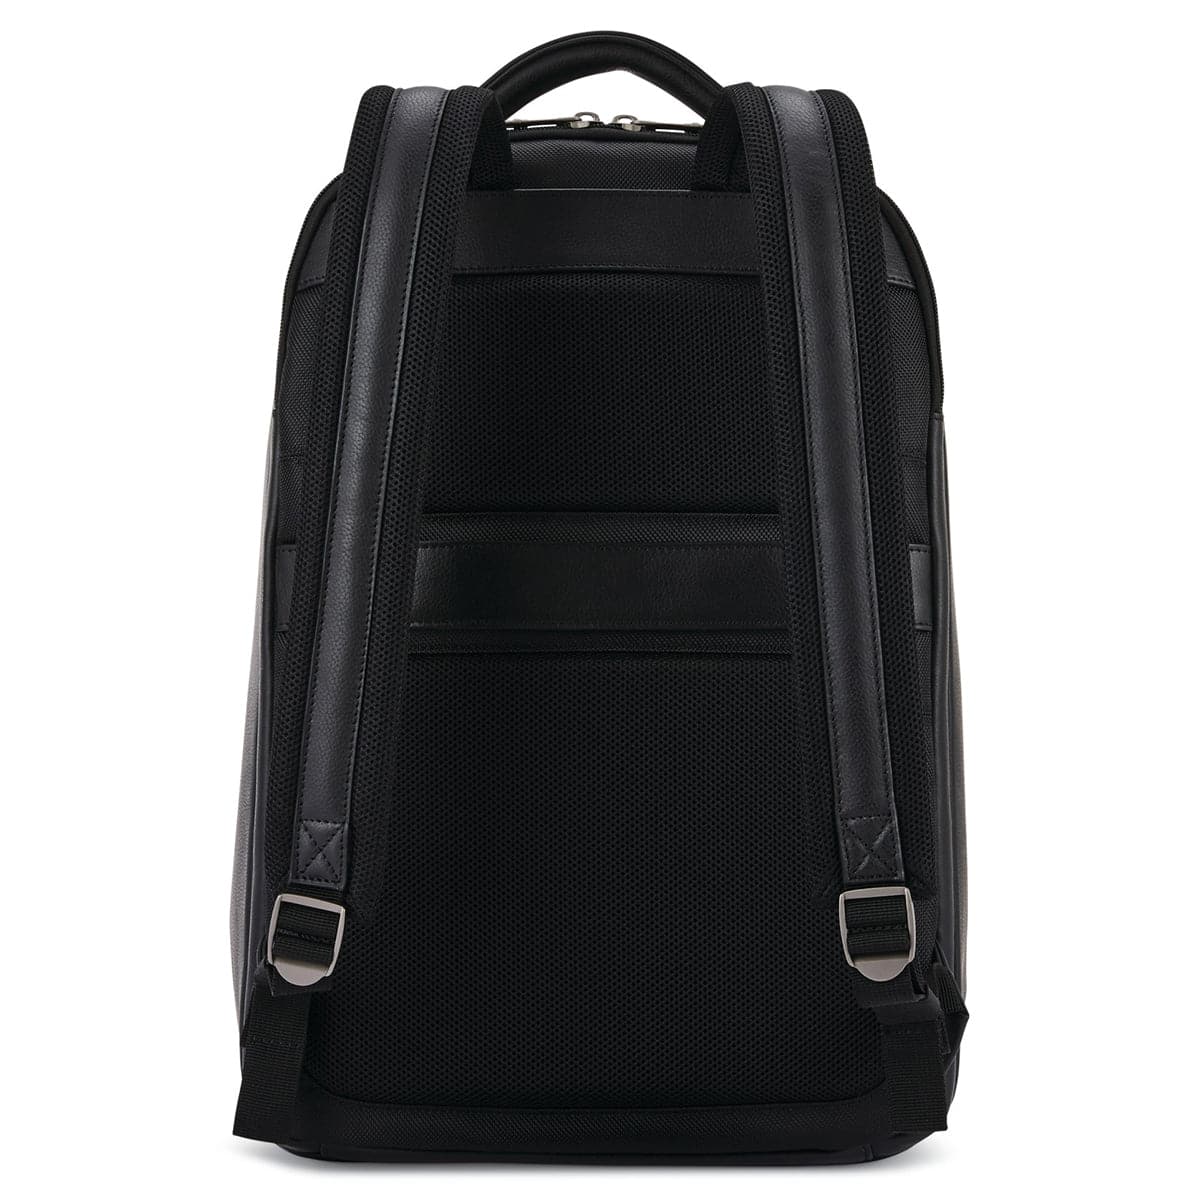 Samsonite Sam Classic Leather Backpack